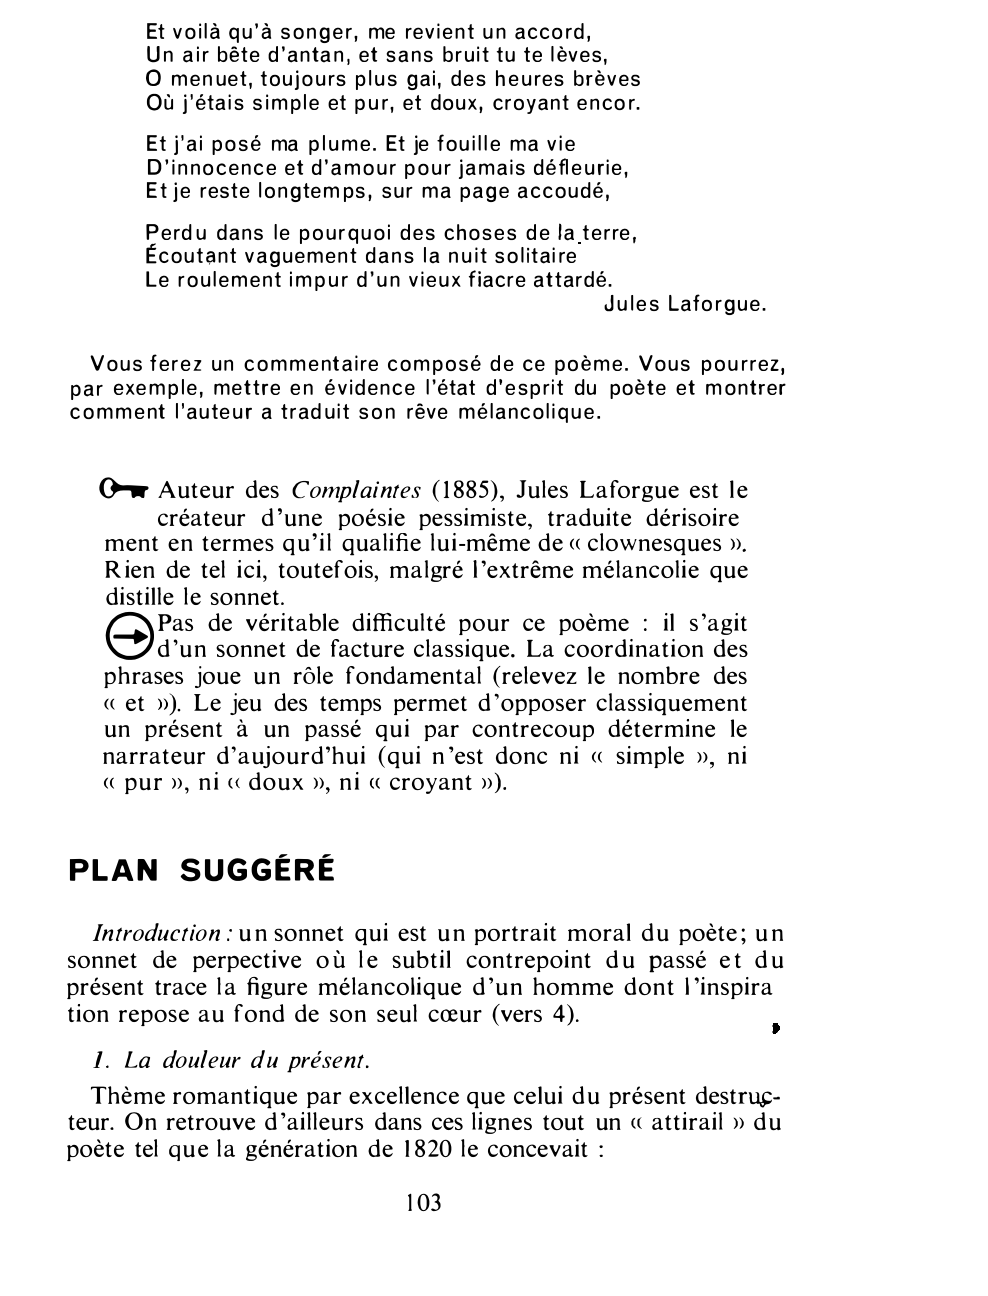 Prévisualisation du document Jules Laforgue. Commentaire composé